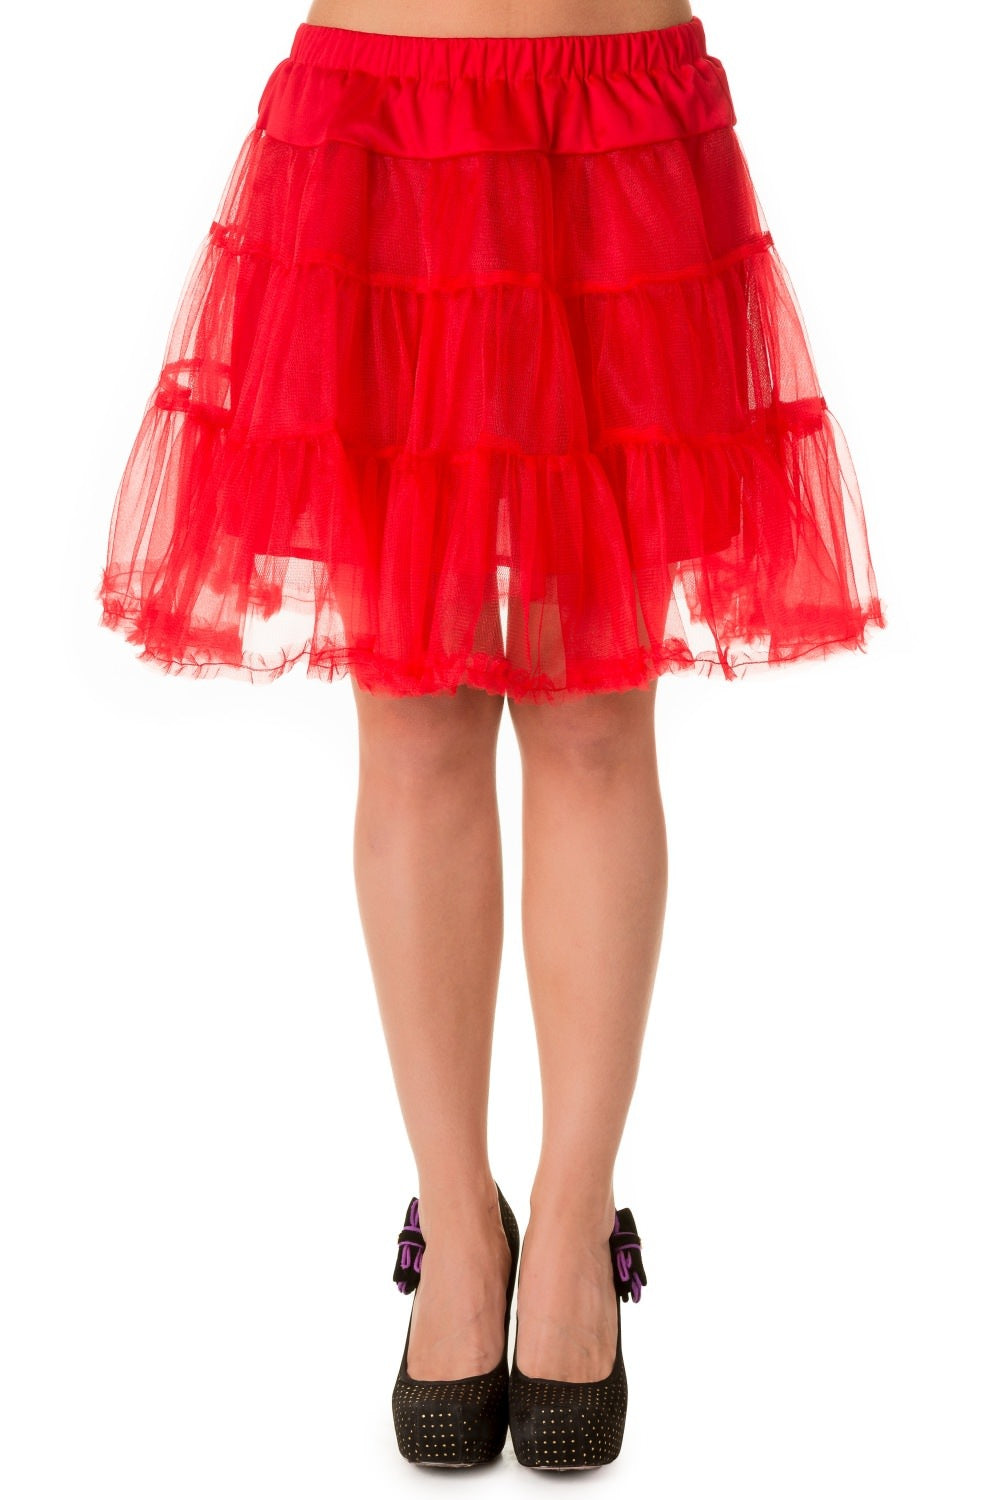 Crinoline Petticoat Rouge [SBN202] I24M